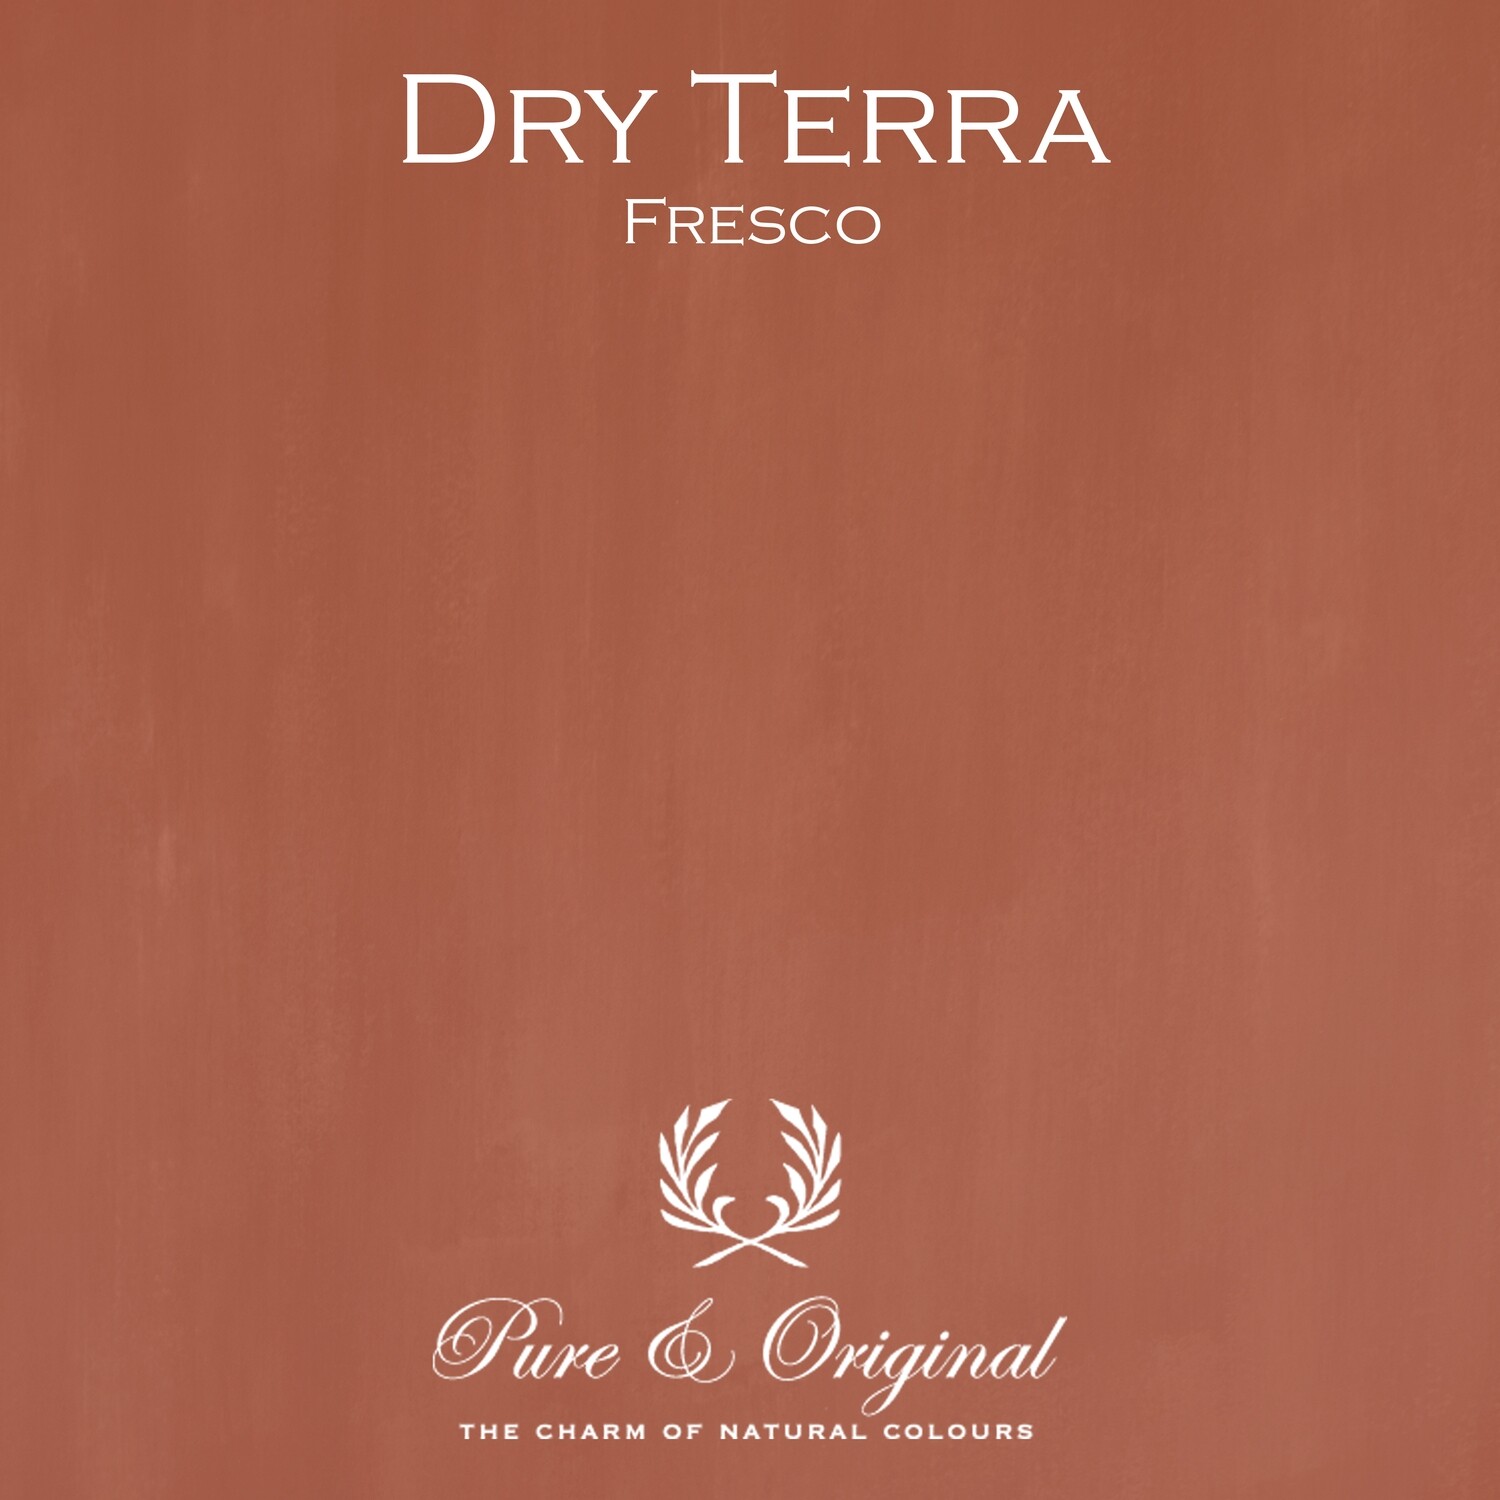 Dry Terra Fresco